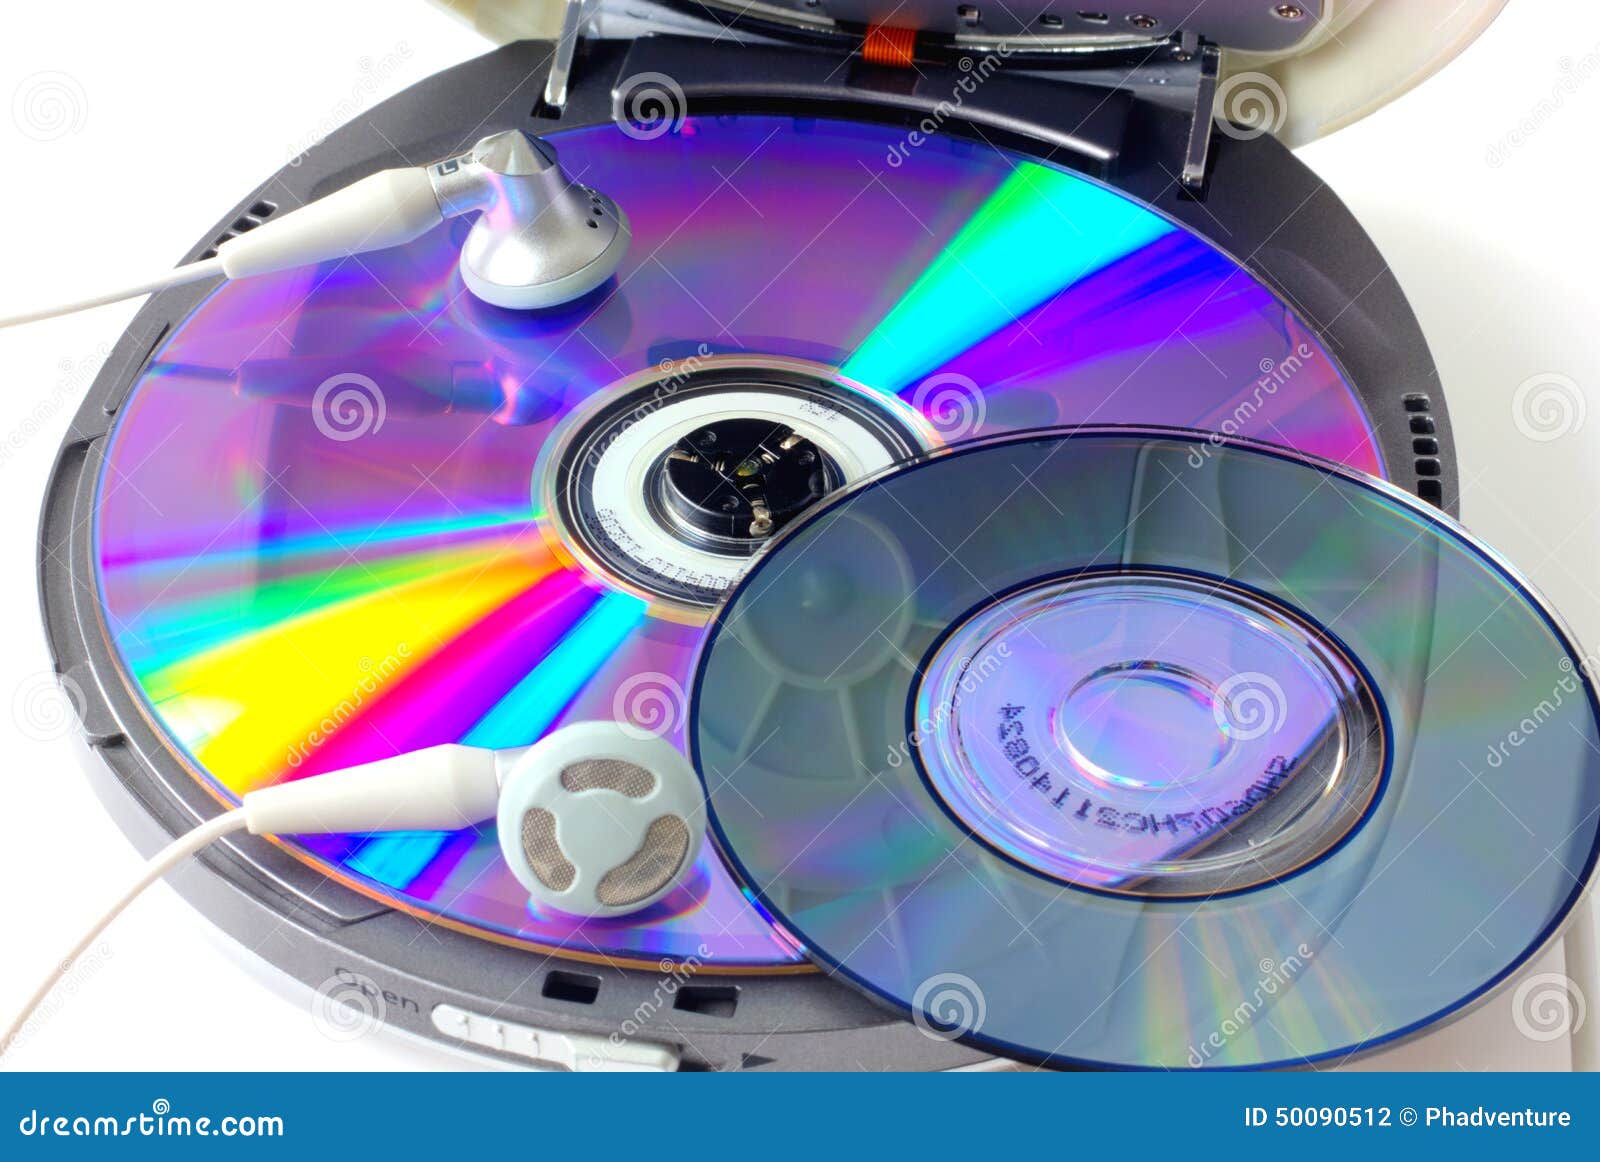 Звуковой компакт. Звуковой компакт-диск. Проигрыватель аудио диск. Компакт диски с музыкой. Для записи компакт дисков Portable CDEX.